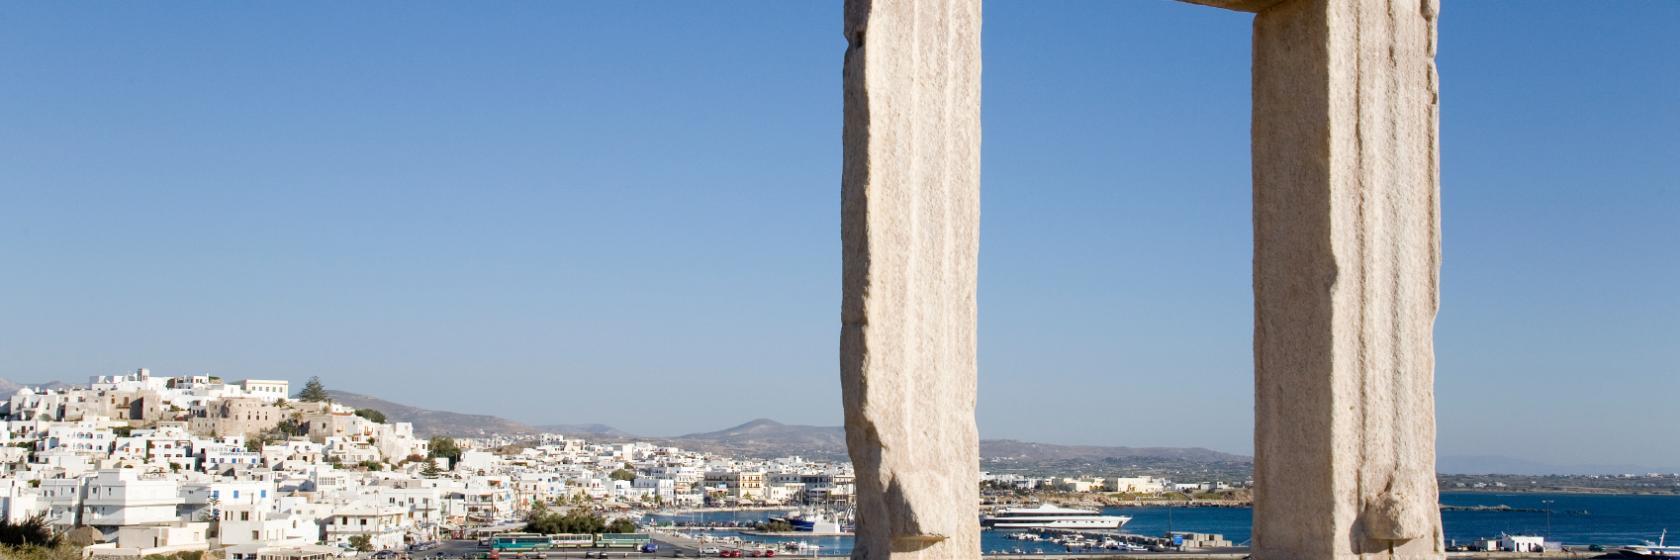 Naxos Chora, Naxos Hotels